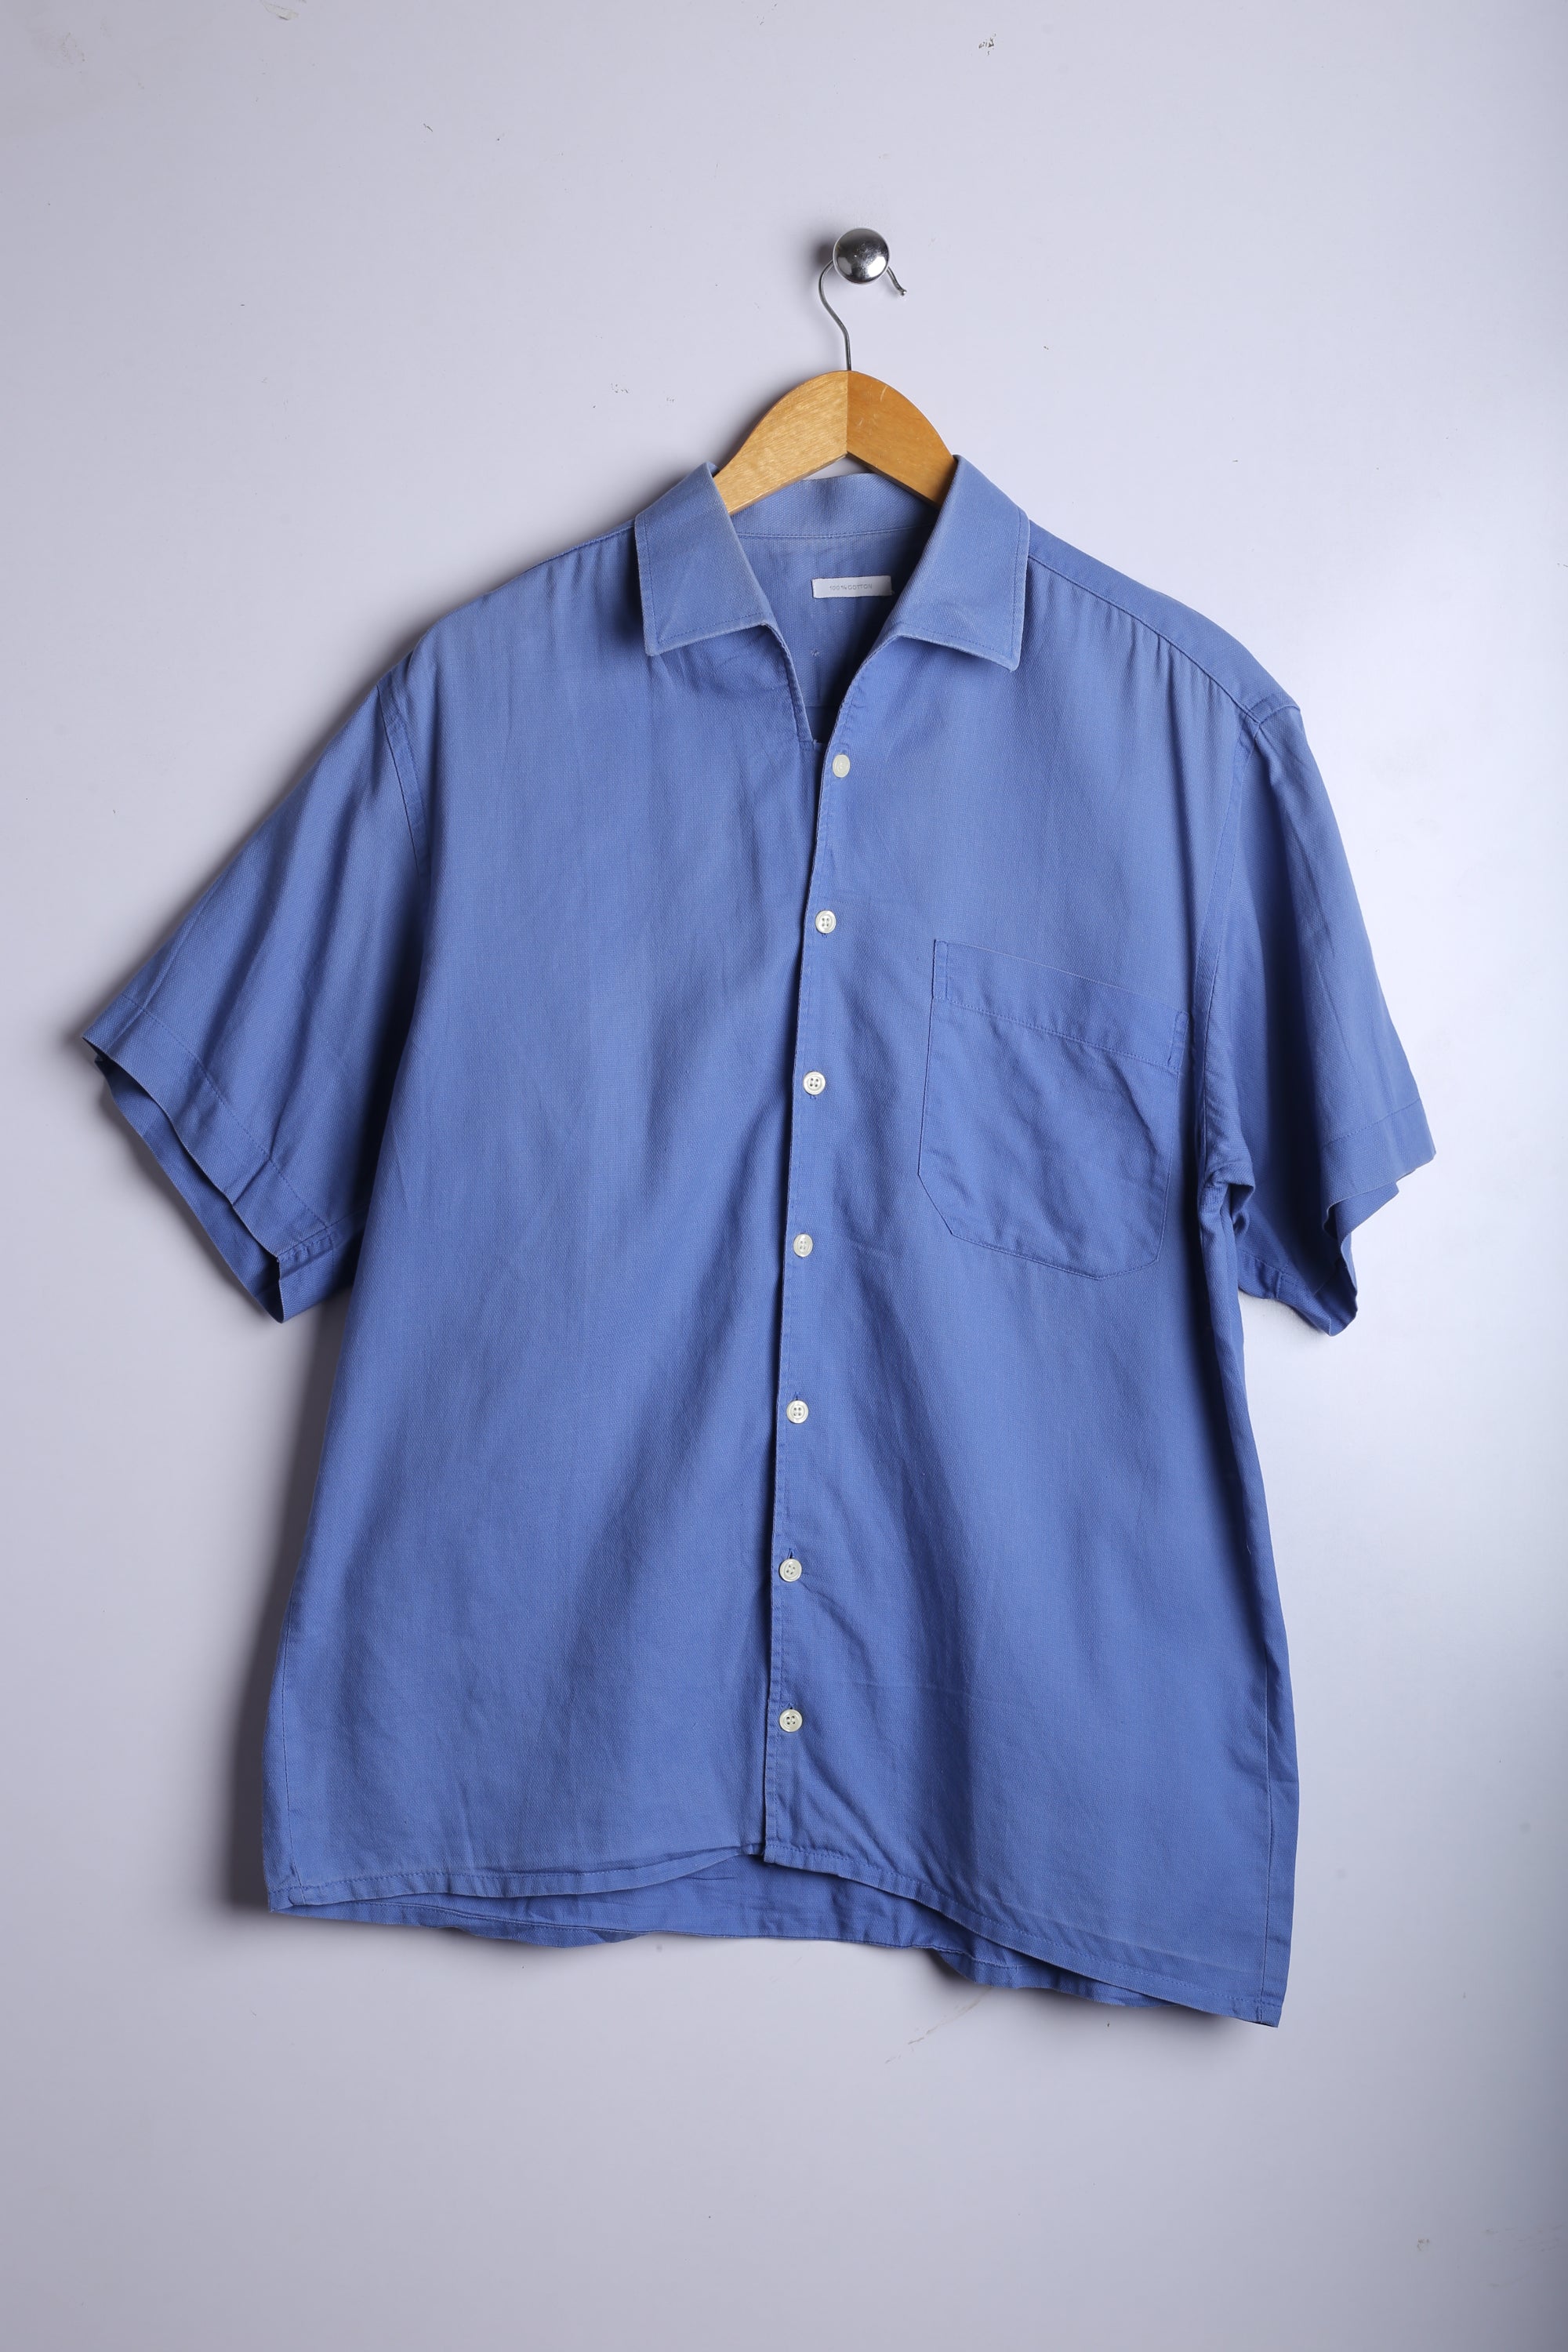 Vintage Casual Shirt Sky Blue - Cotton